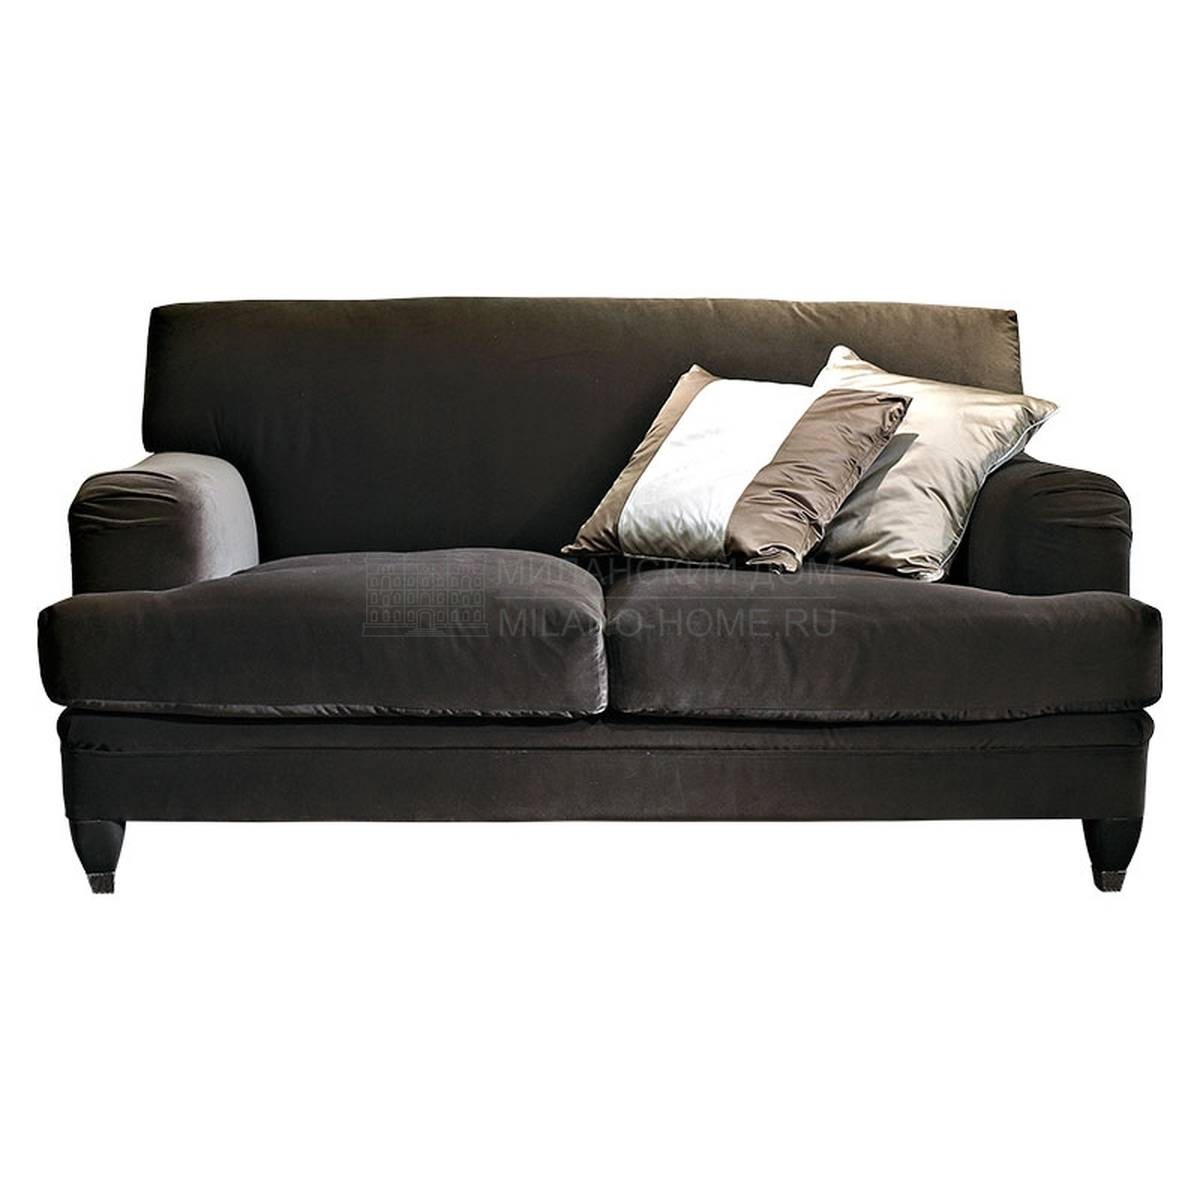 Прямой диван Tina/ sofa из Италии фабрики SOFTHOUSE